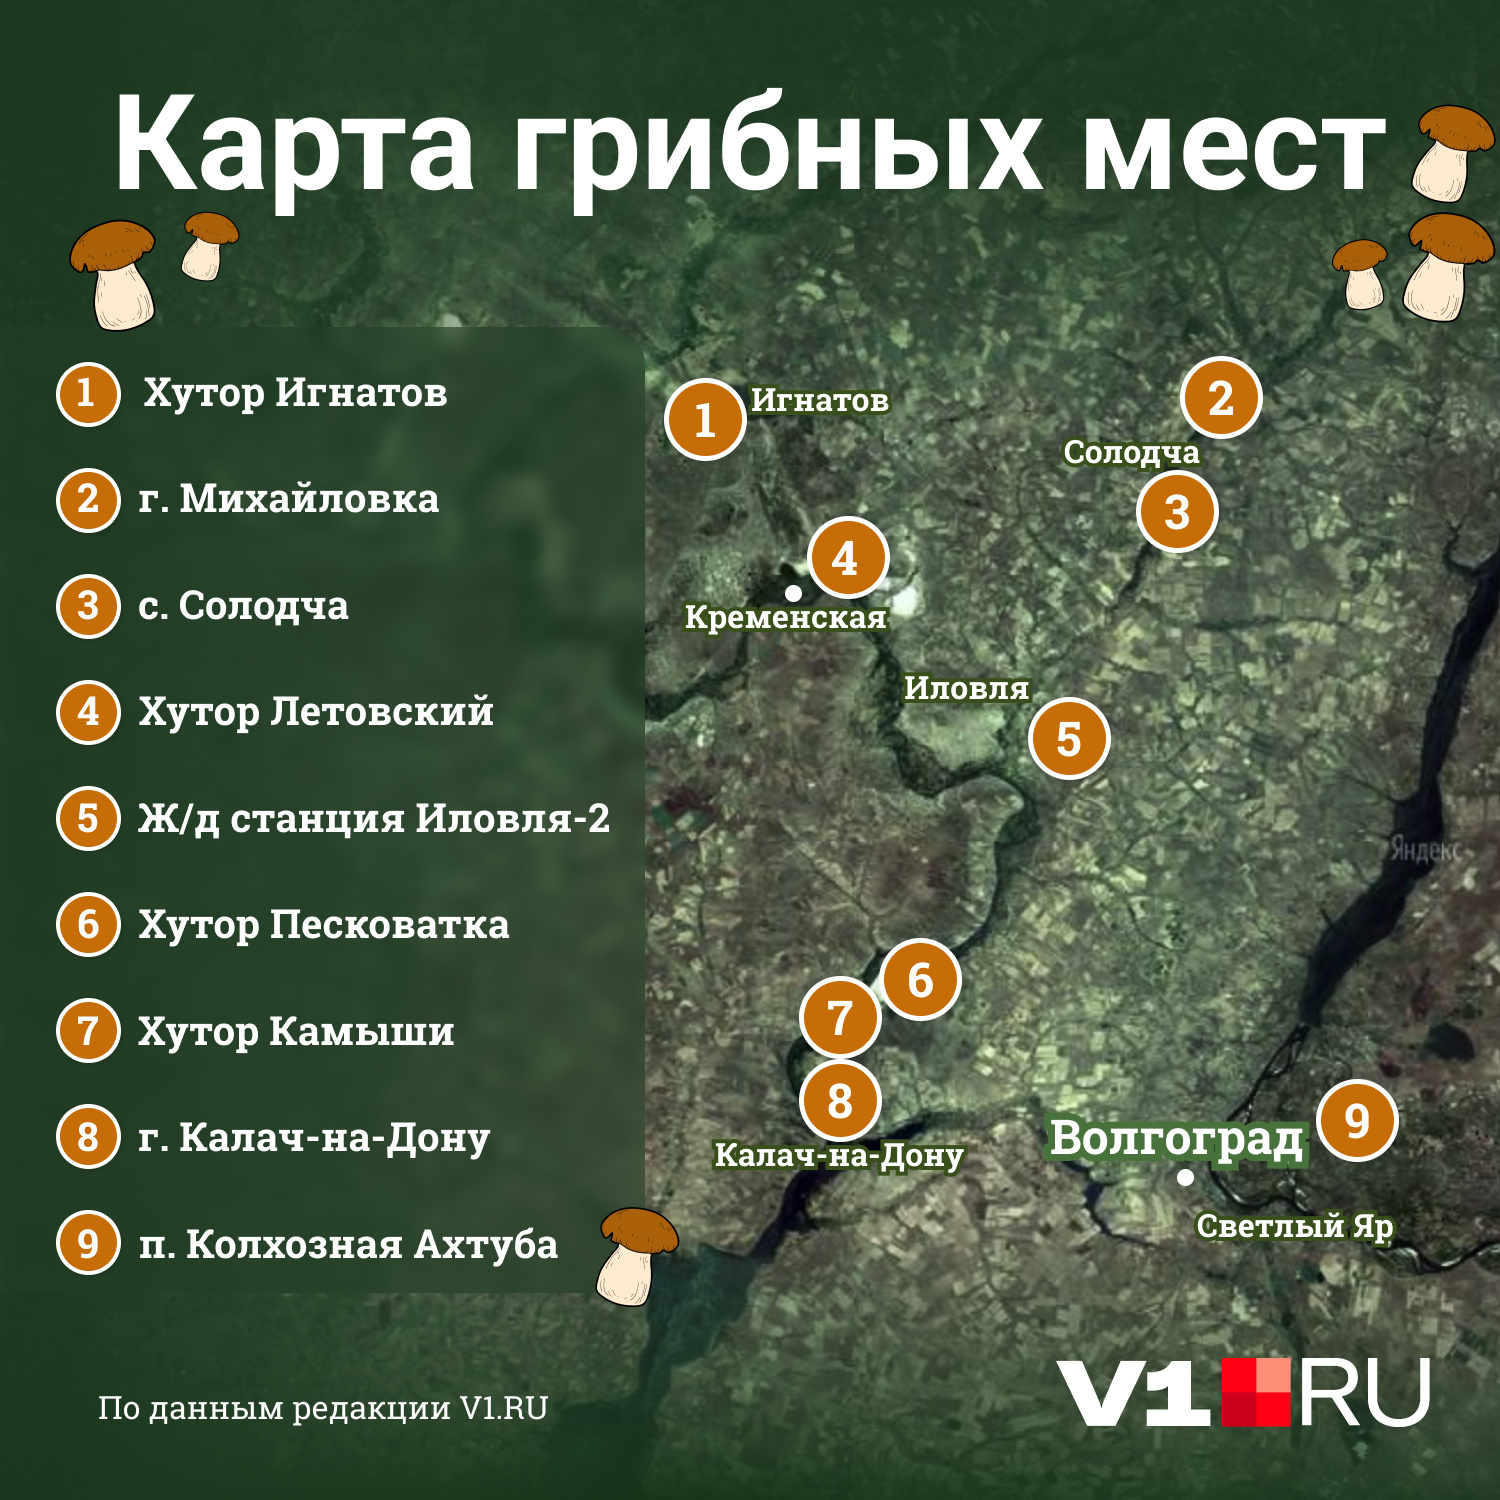 Карта составлена благодаря Алексею Петрову, который объездил едва ли не всю область в поисках грибов